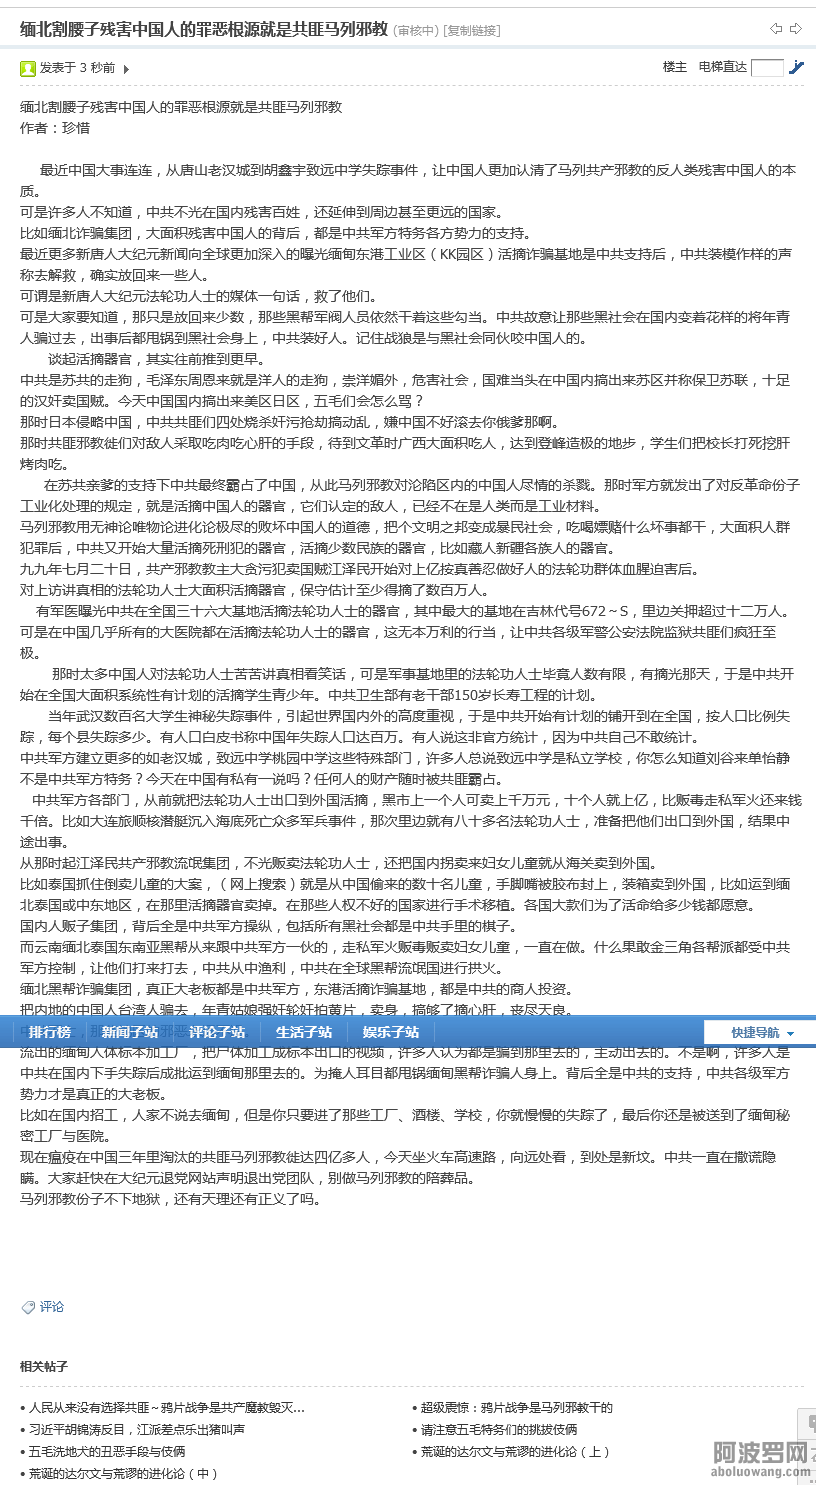 Screenshot 2023-02-27 at 09-33-29 缅北割腰子残害中国人的罪恶根源就是共匪马列邪教.png